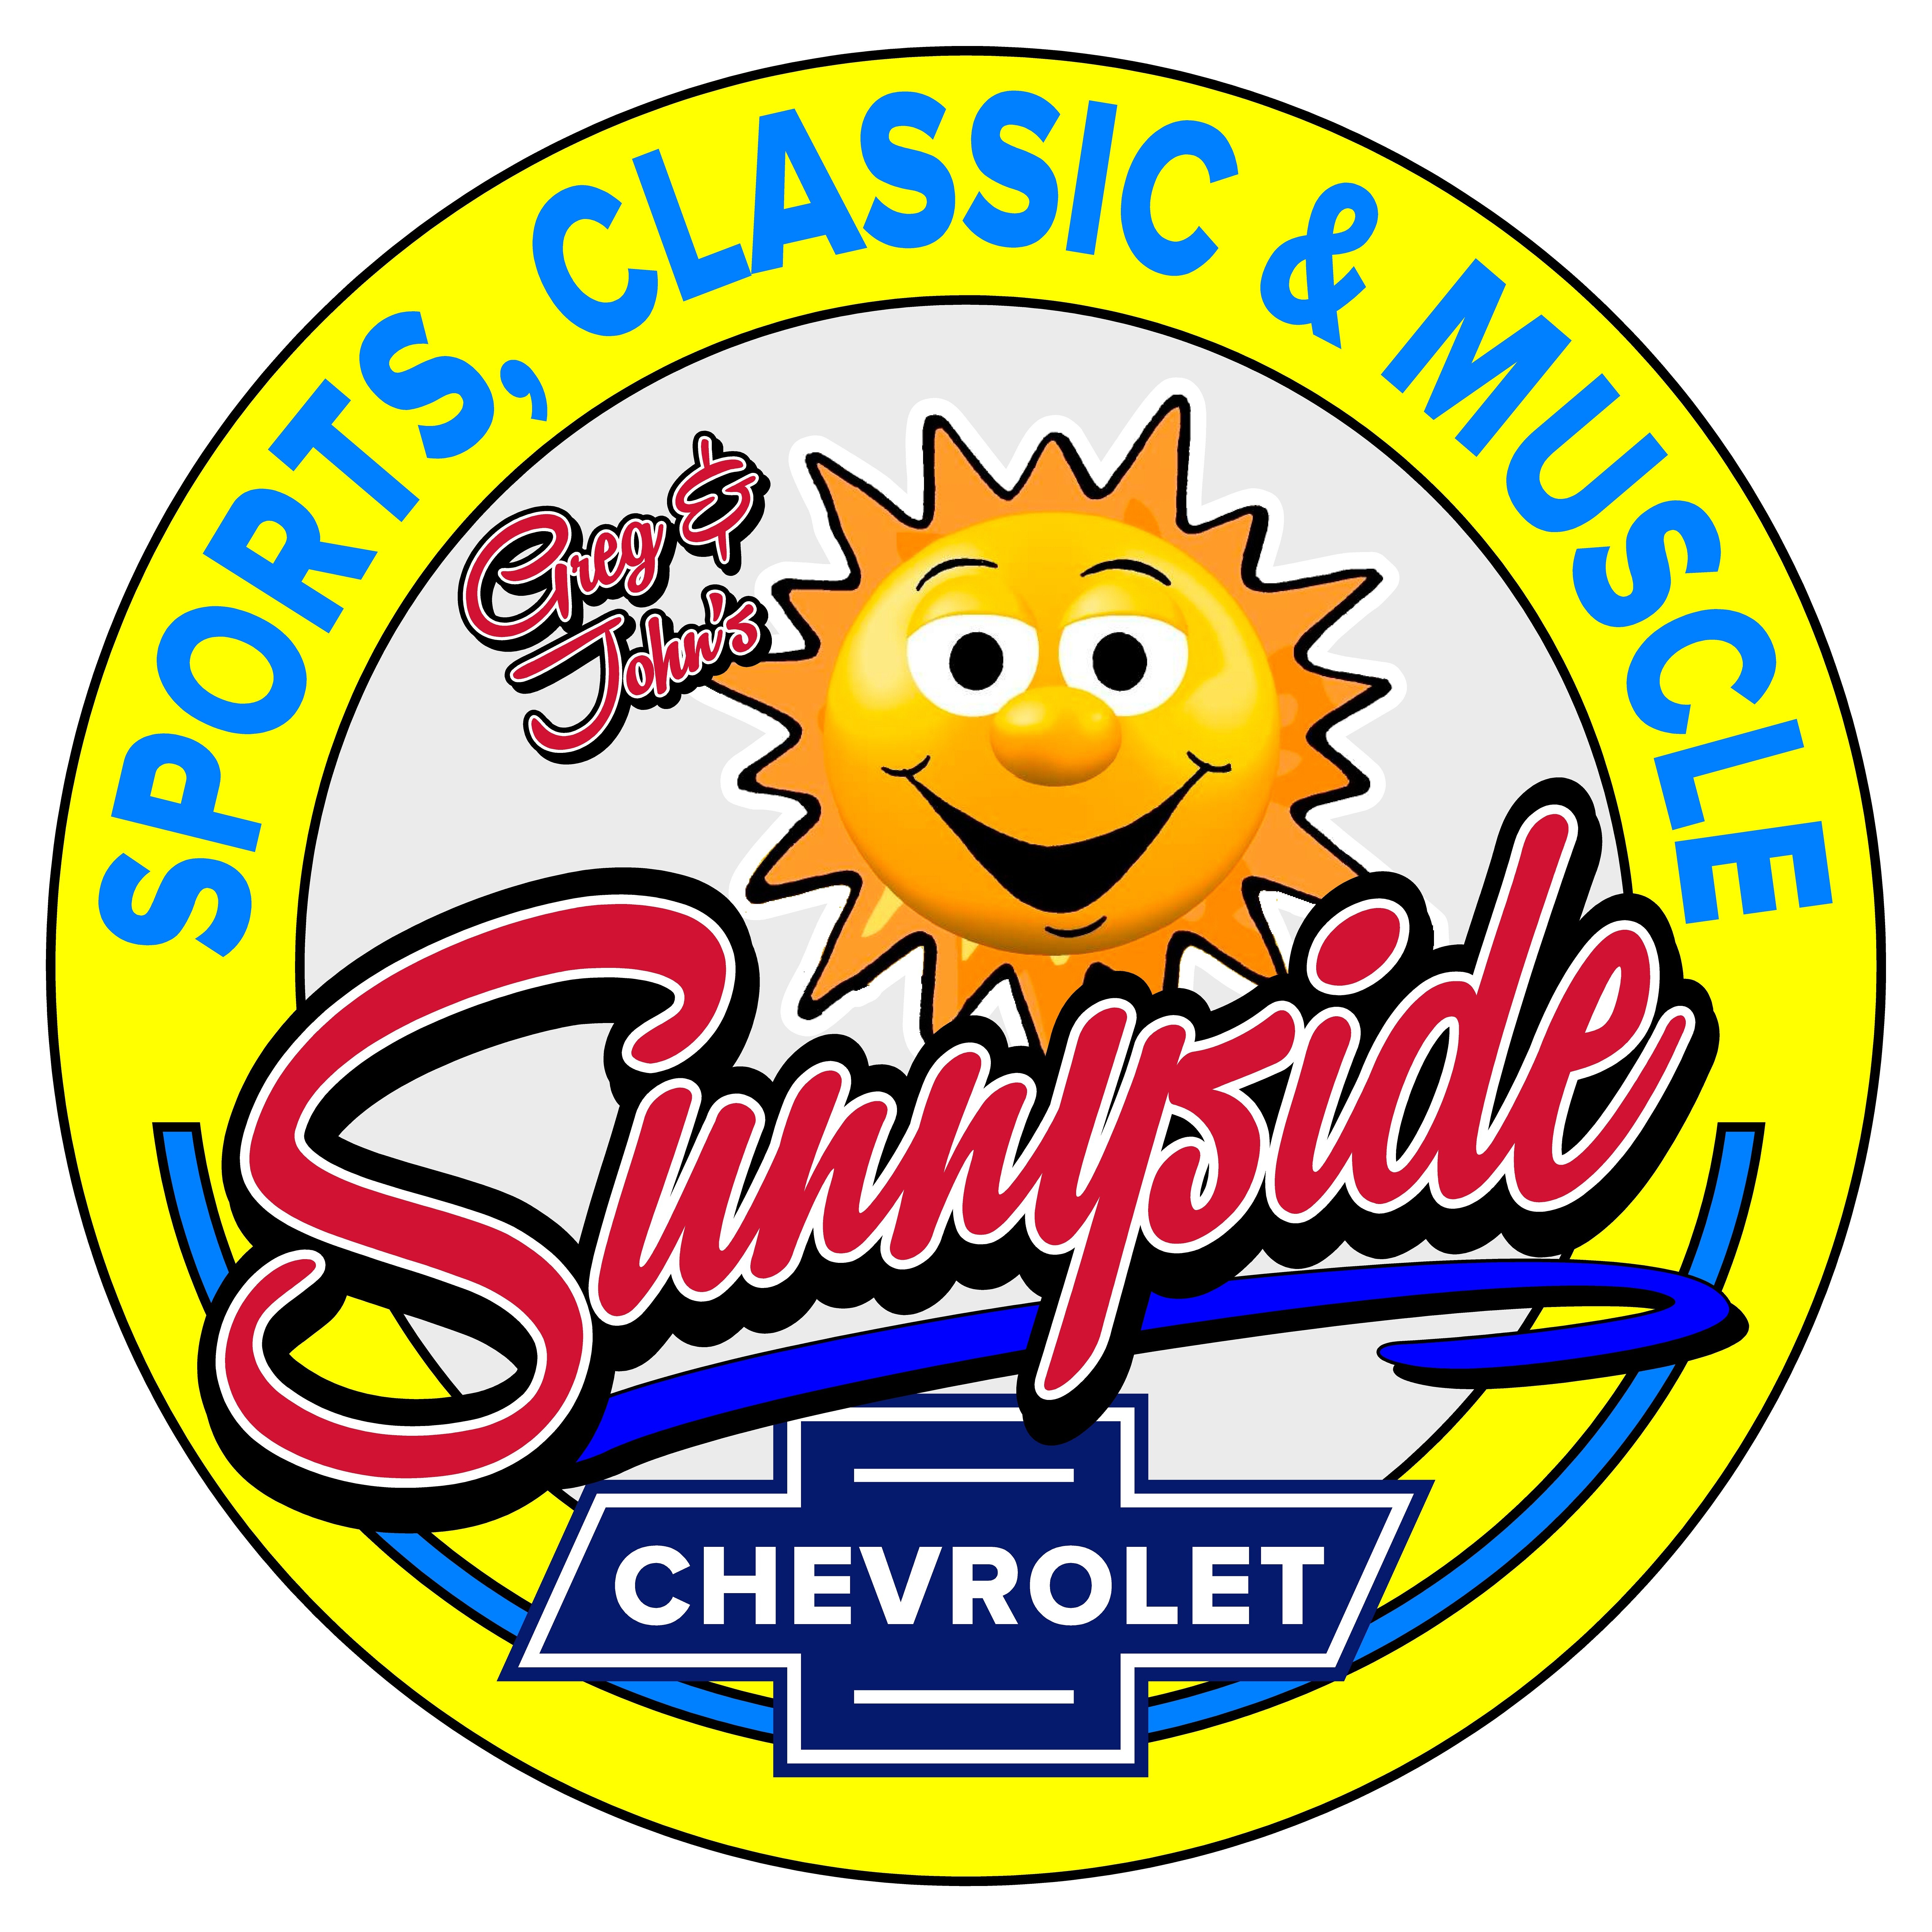 Sunnyside Chevrolet